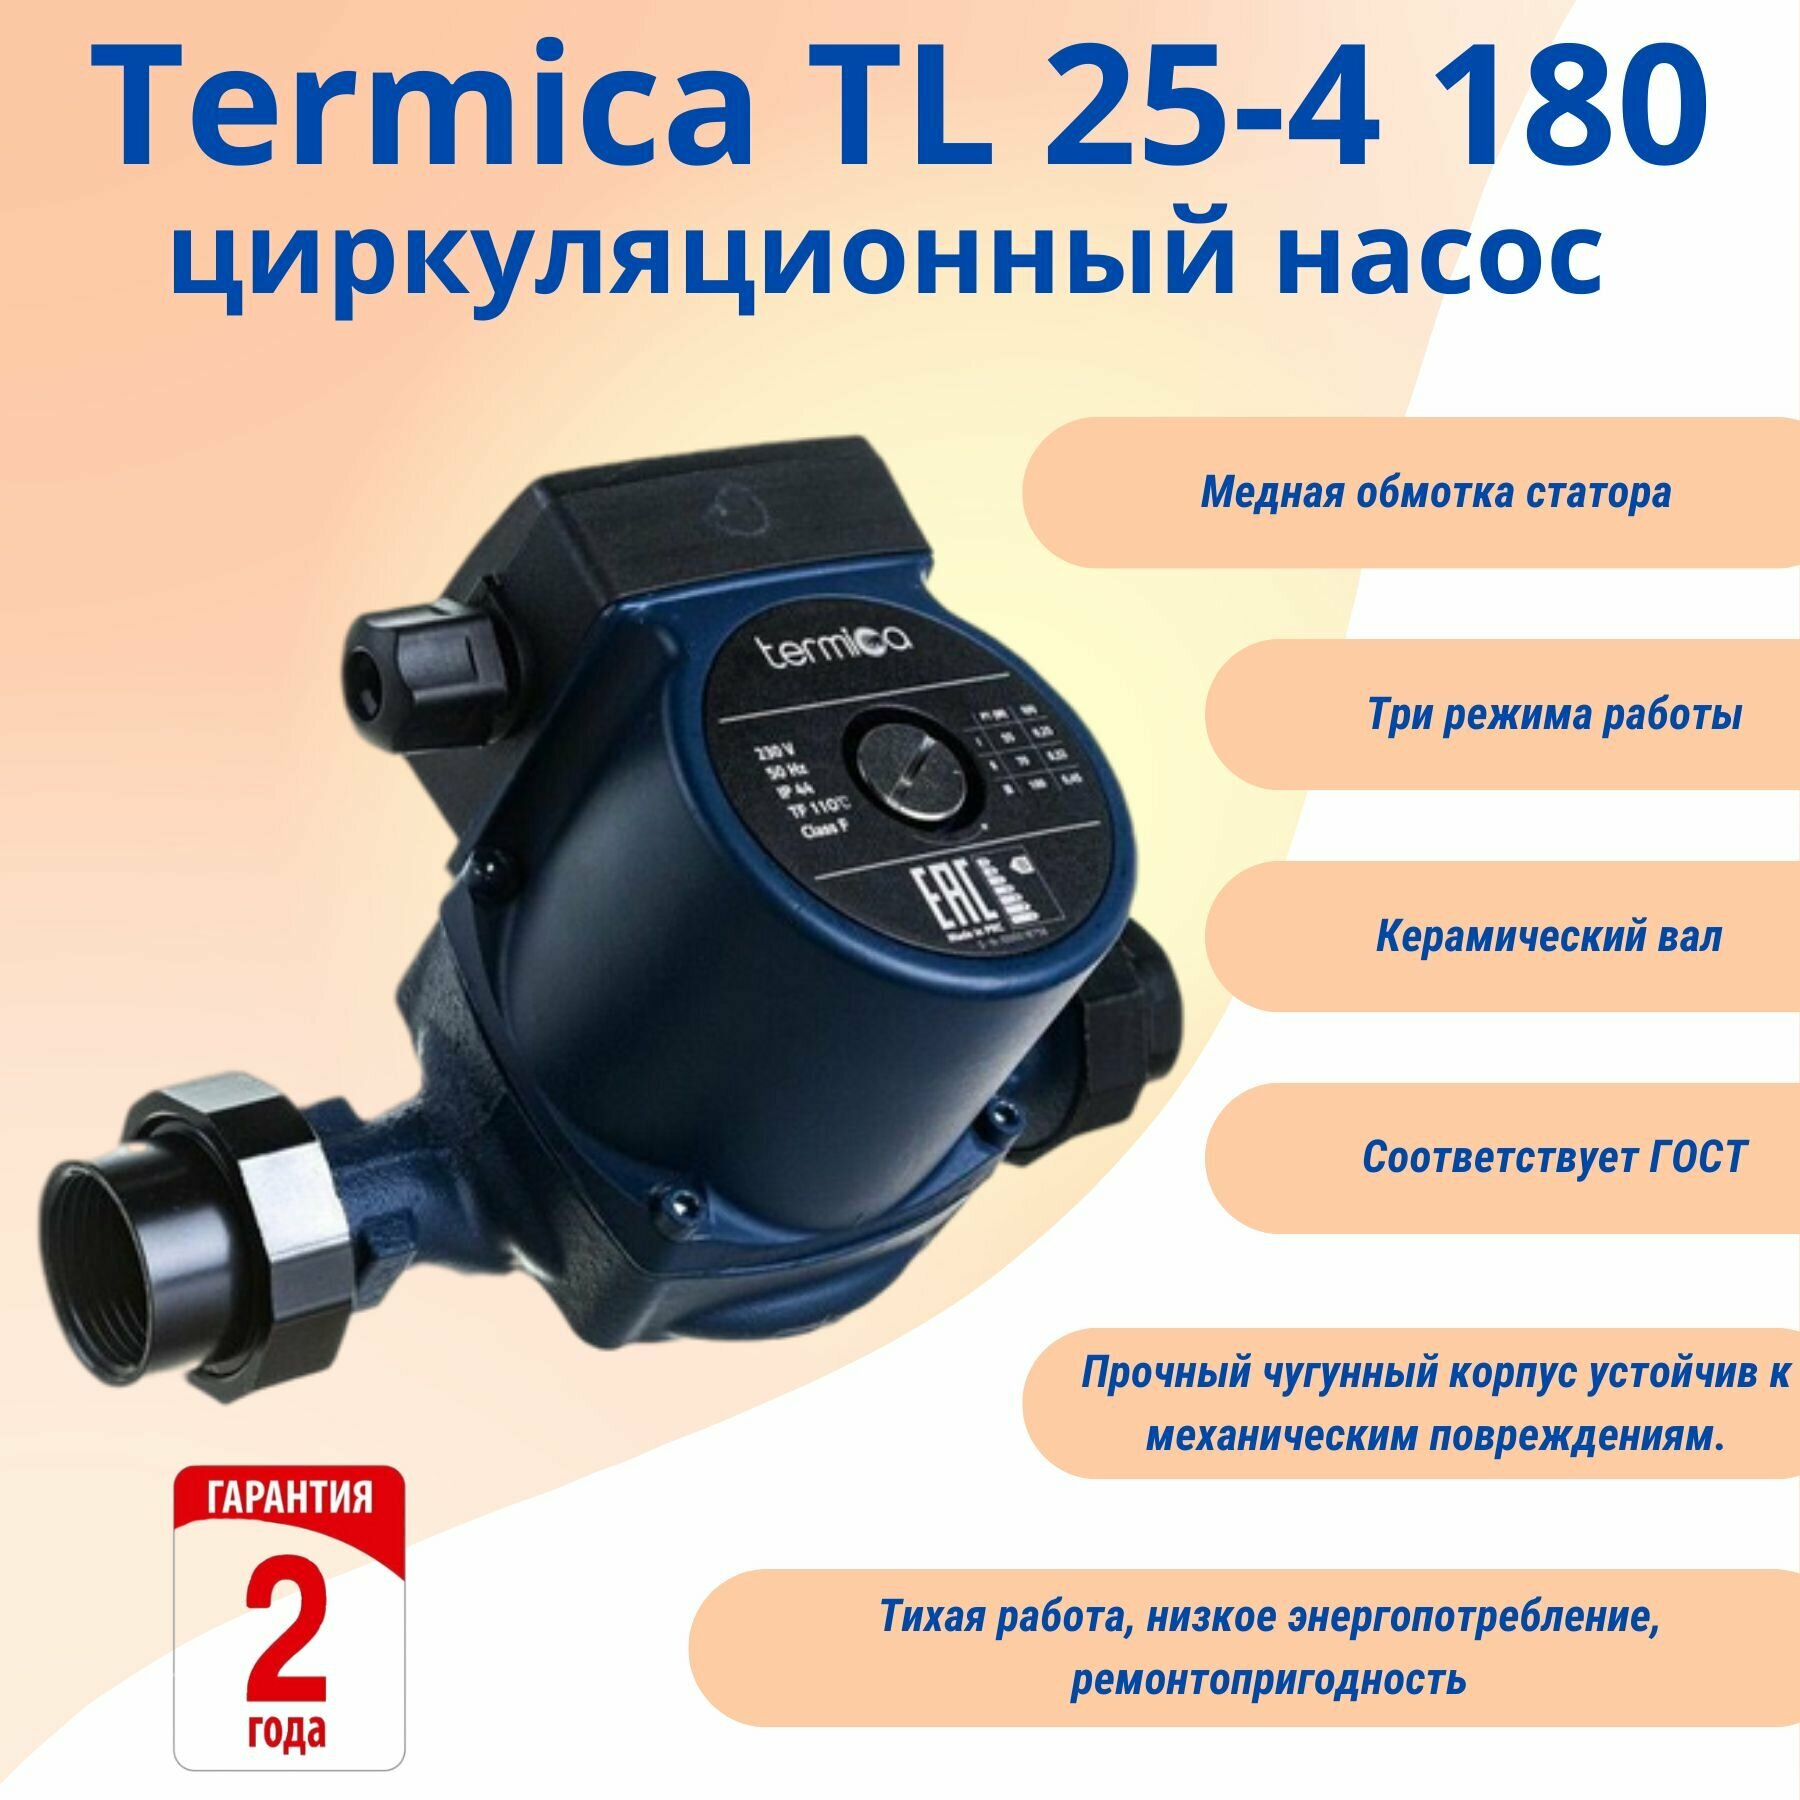 Termica TL 25-4 180 циркуляционный насос с переходными монтажними гайками 1 1/2"-1" (без провода)